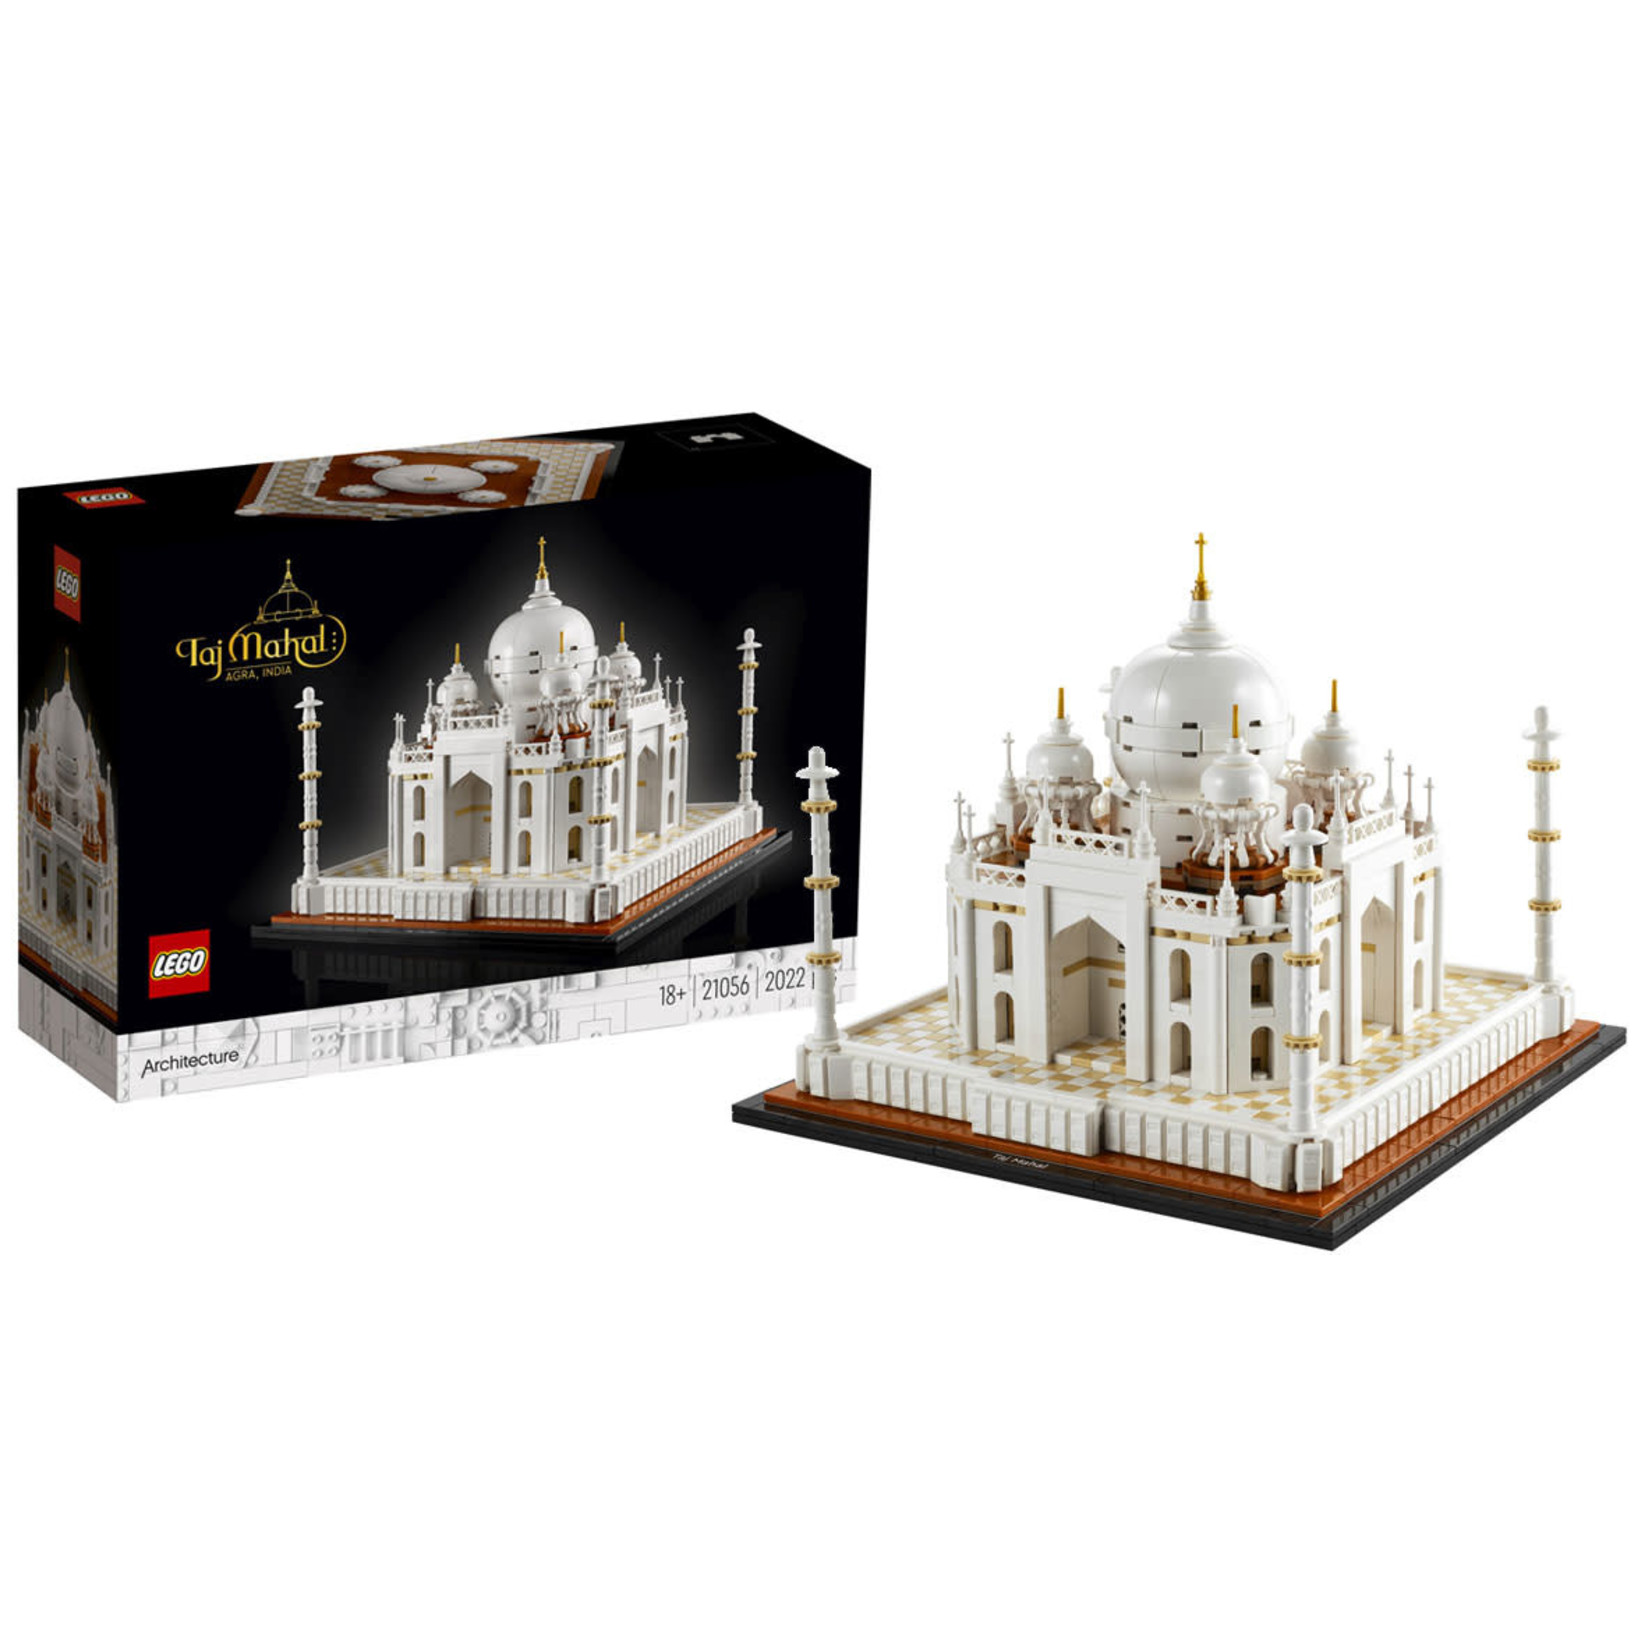 LEGO LEGO Architecture Taj Mahal